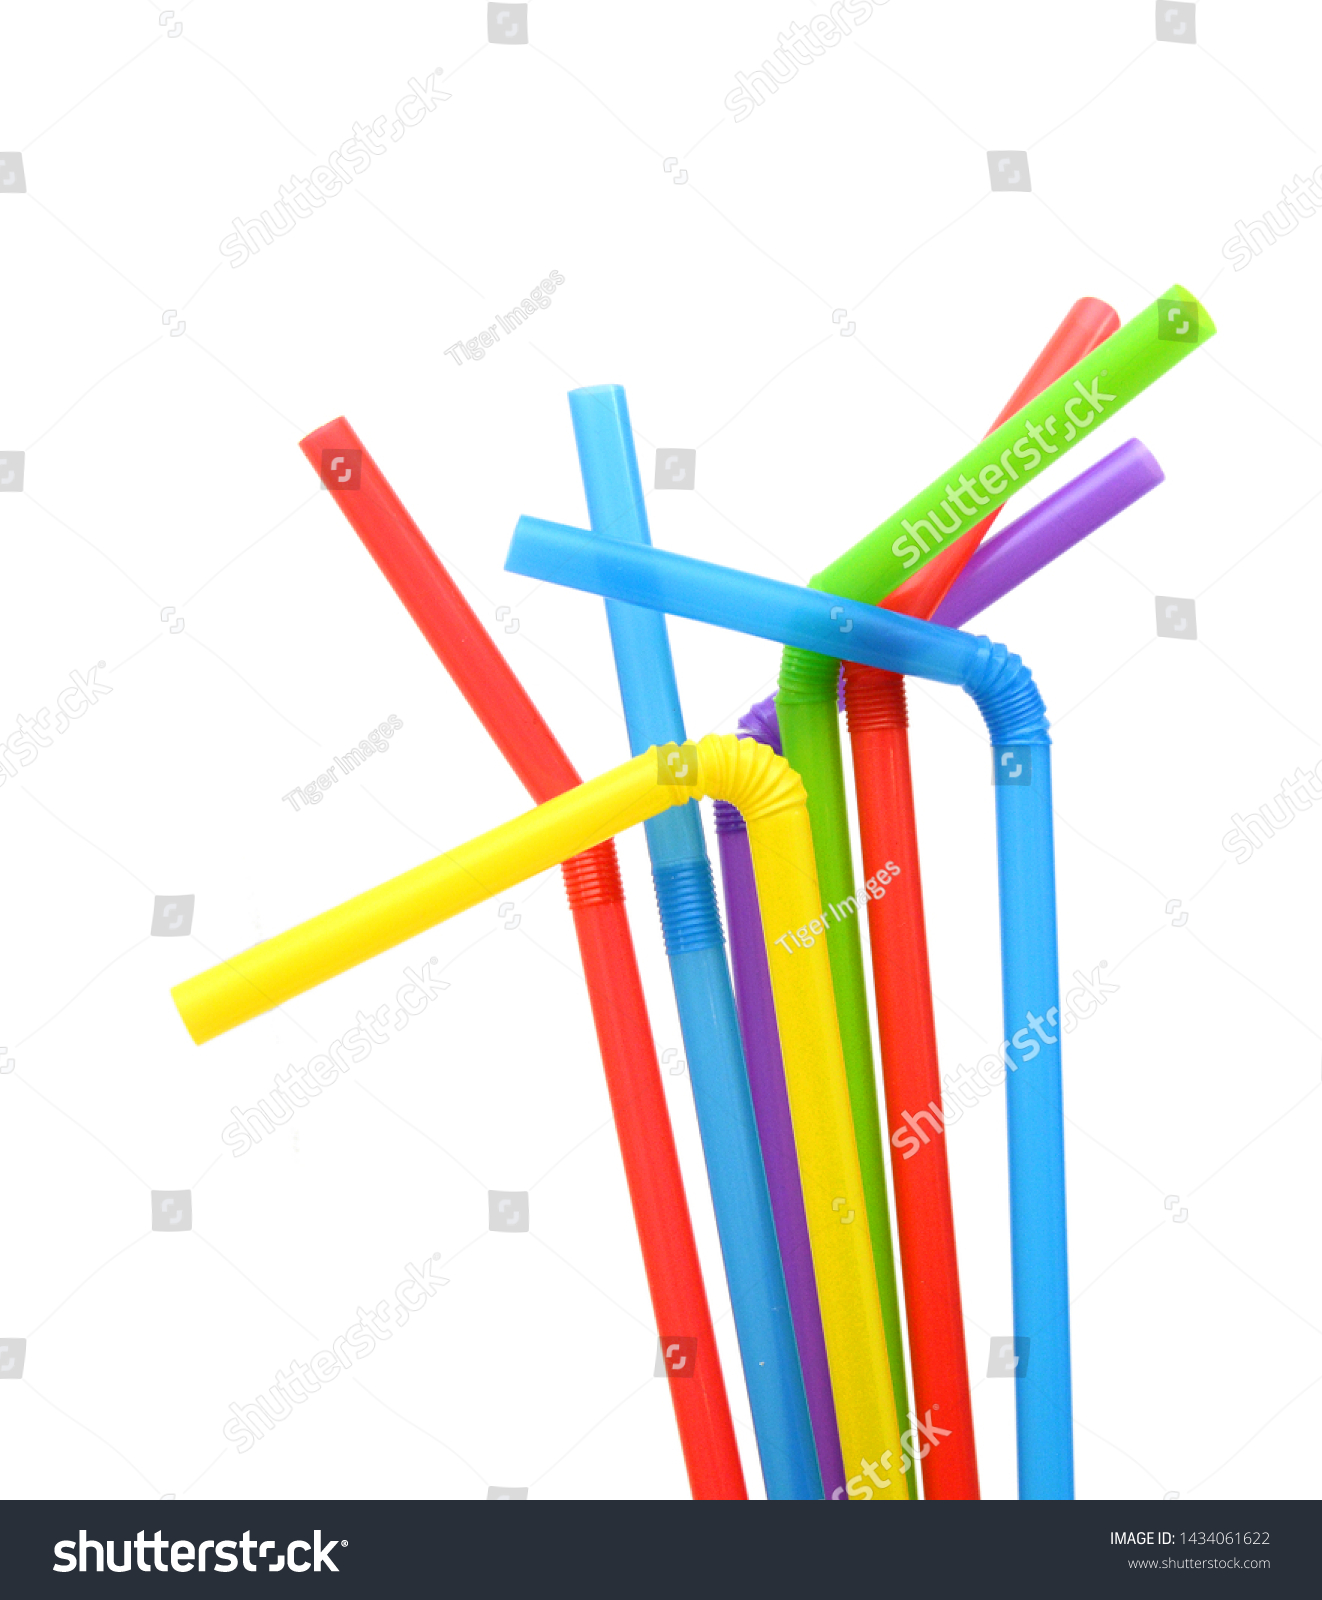 Straw plastic straw drink straw - Image  #1434061622